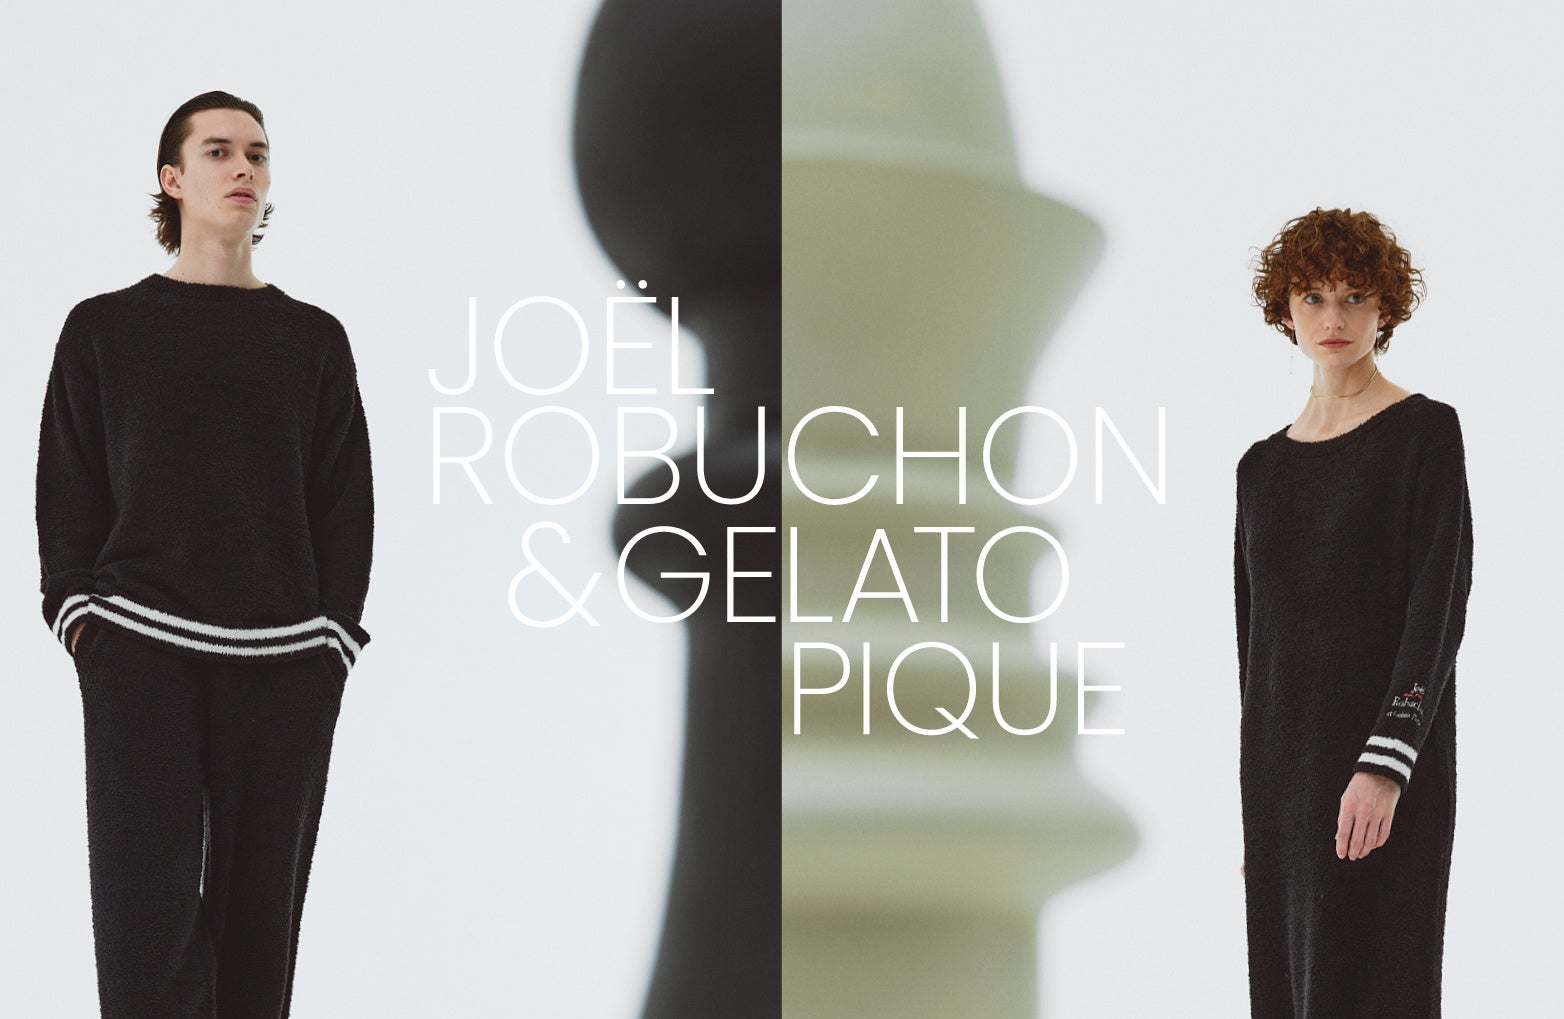 【gelato pique(ジェラート ピケ)】大人のための黒を基調とした「ジョエル・ロブション」とのコラボレーショ...